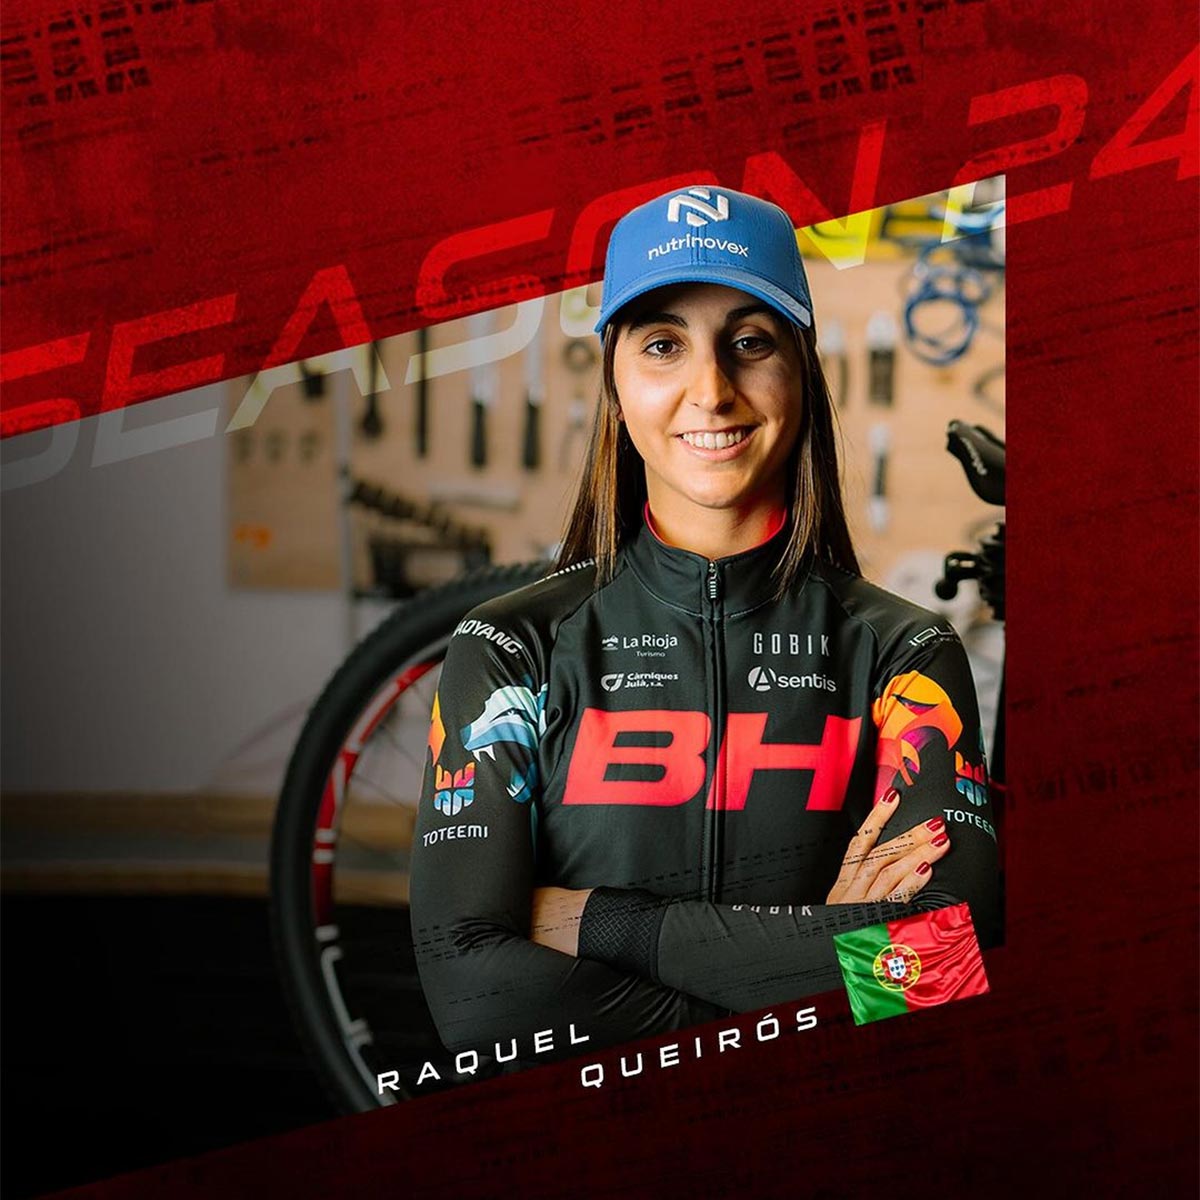 Raquel Queirós, la vigente campeona de Portugal de XCO, se une al BH Coloma Team